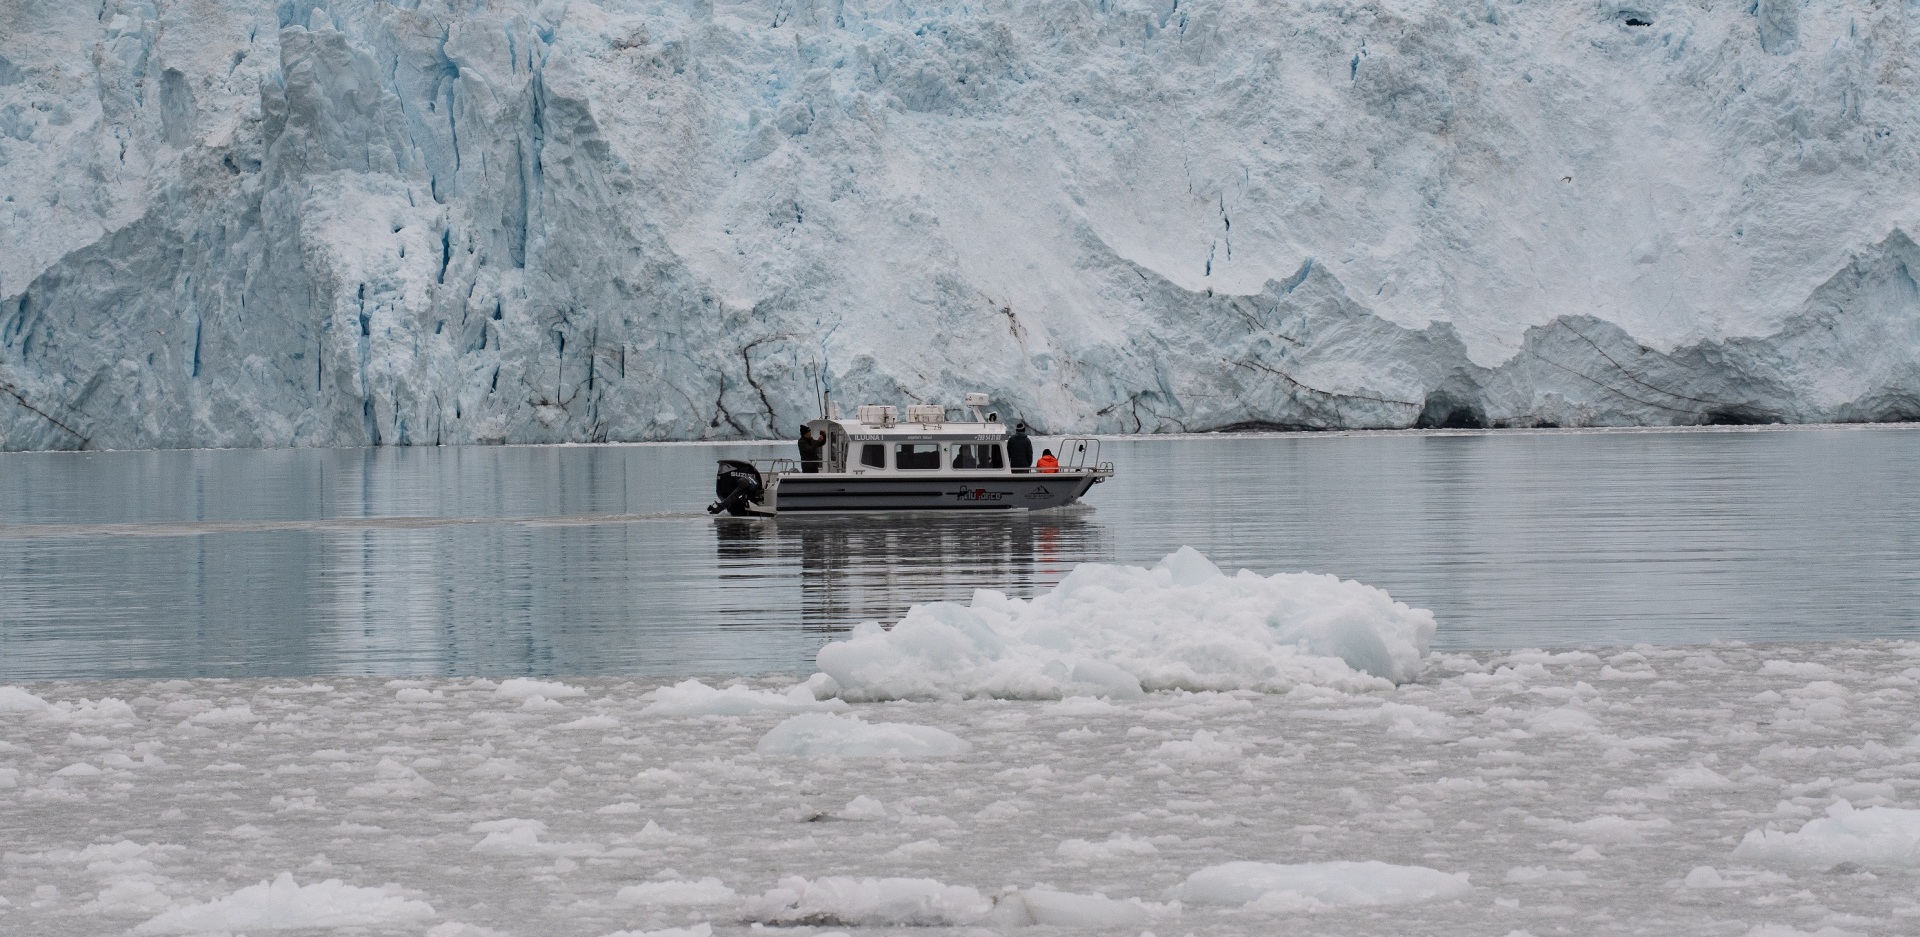 Γροιλανδία: Στη Χώρα των Πάγων με τον φακό του Δημήτρη Τριανταφυλλίδη